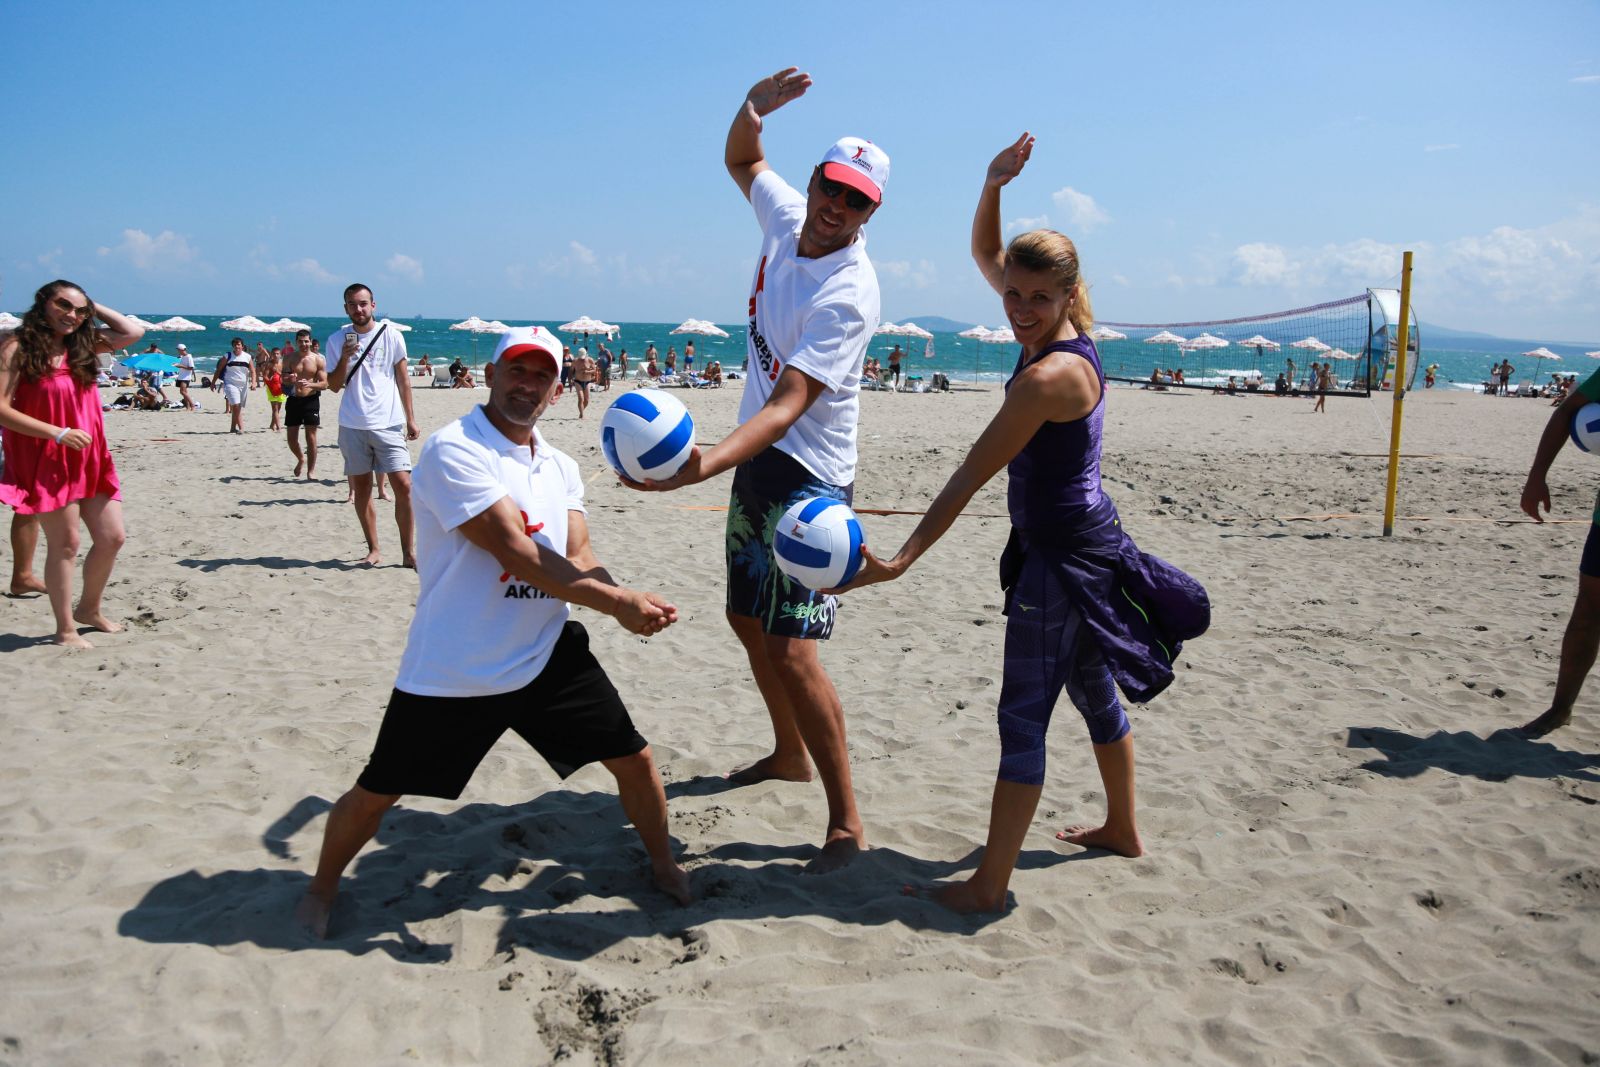 Варна ще бъде домакин на първия по рода си нощен турнир по плажен волейбол. Това съобщиха от общината - организатор на събитието, което се осъществява с подкрепата на фирма „Нестле” и е частот нейната инициатива за балансирано хранене и активен начин на живот – Нестле за Живей Активно! и „ЕКОПАК – България”. Следвай ме - Общество